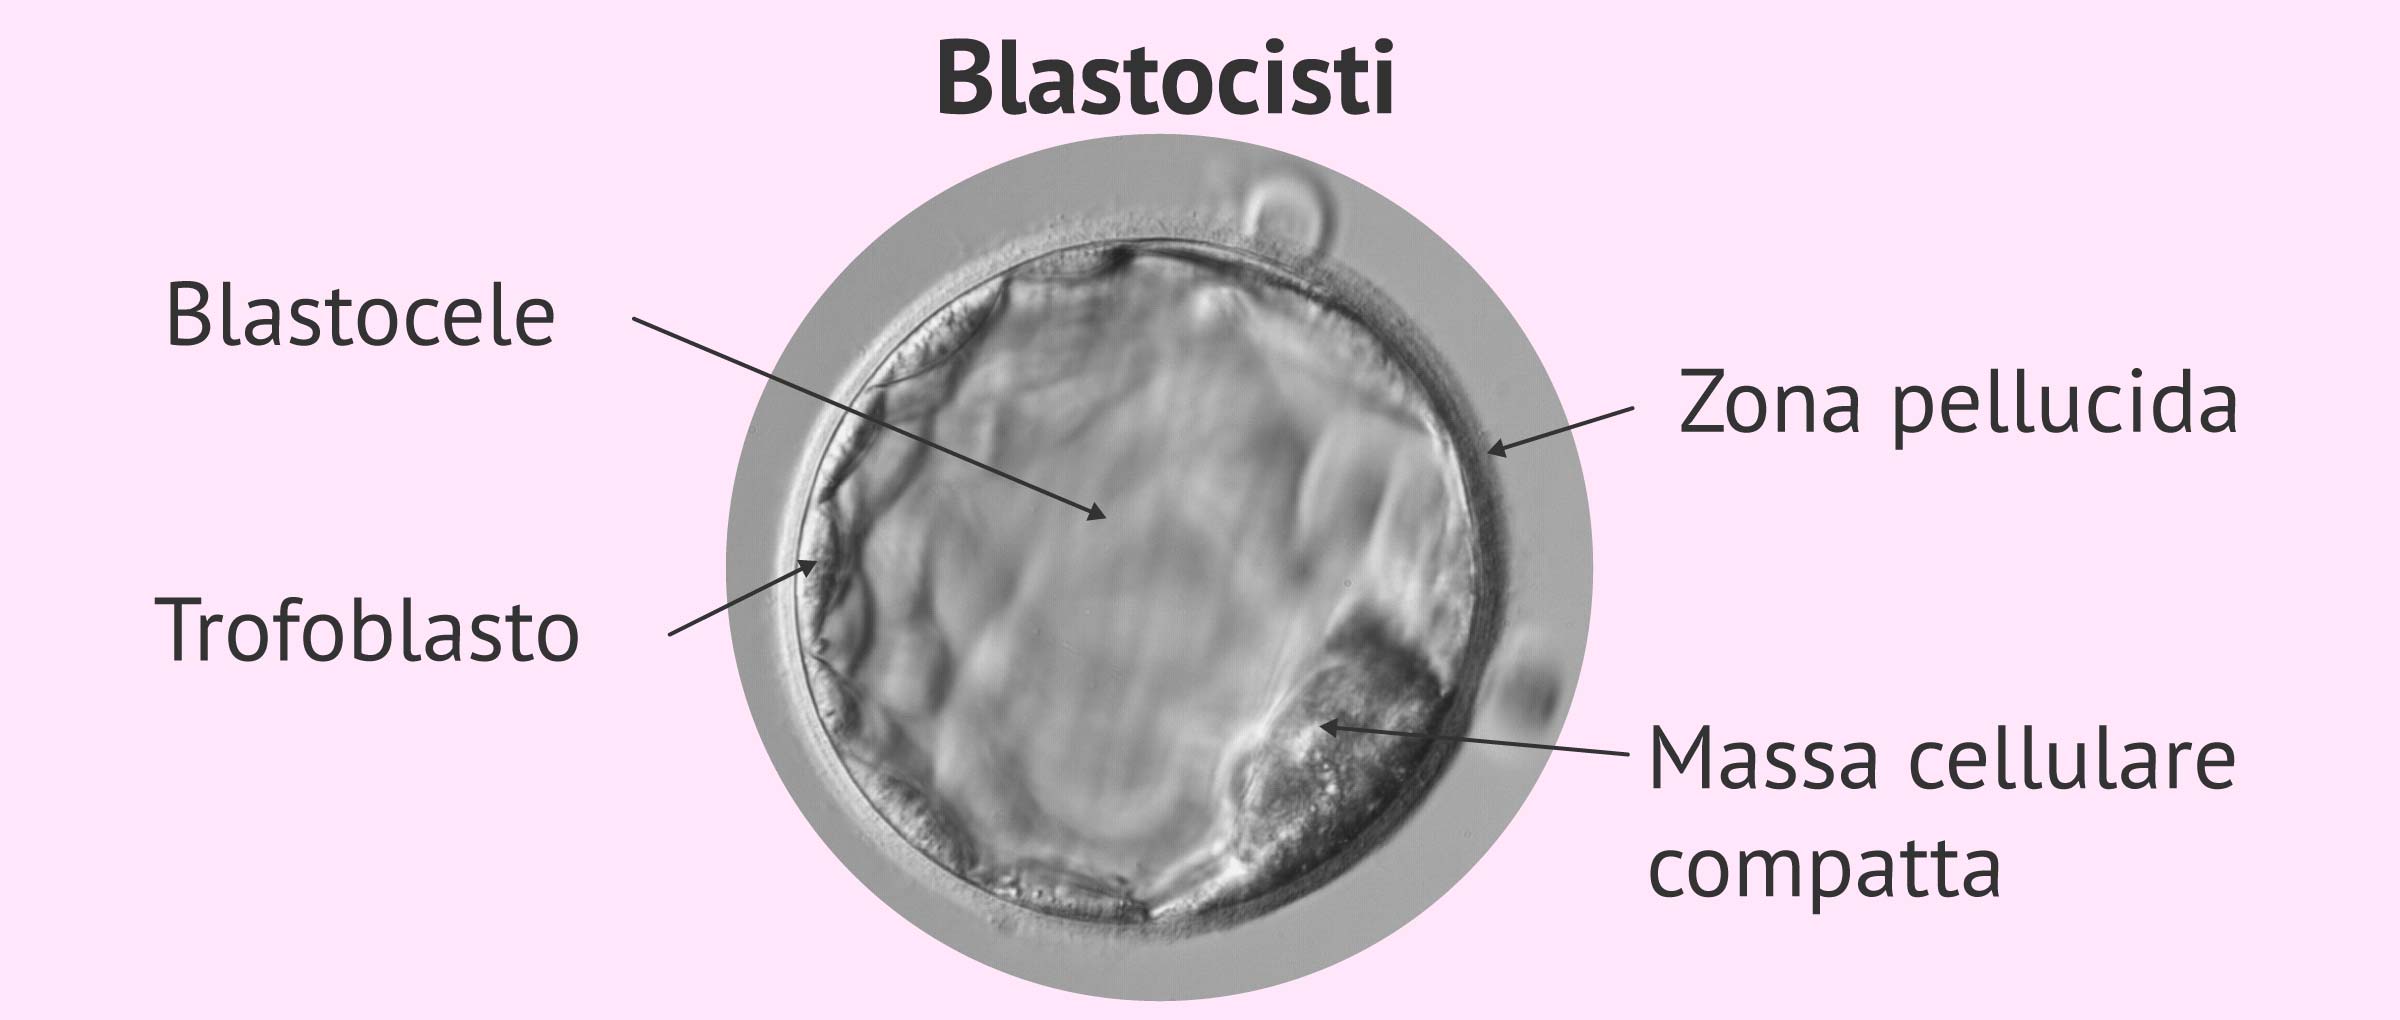 Struttura della blastocisti